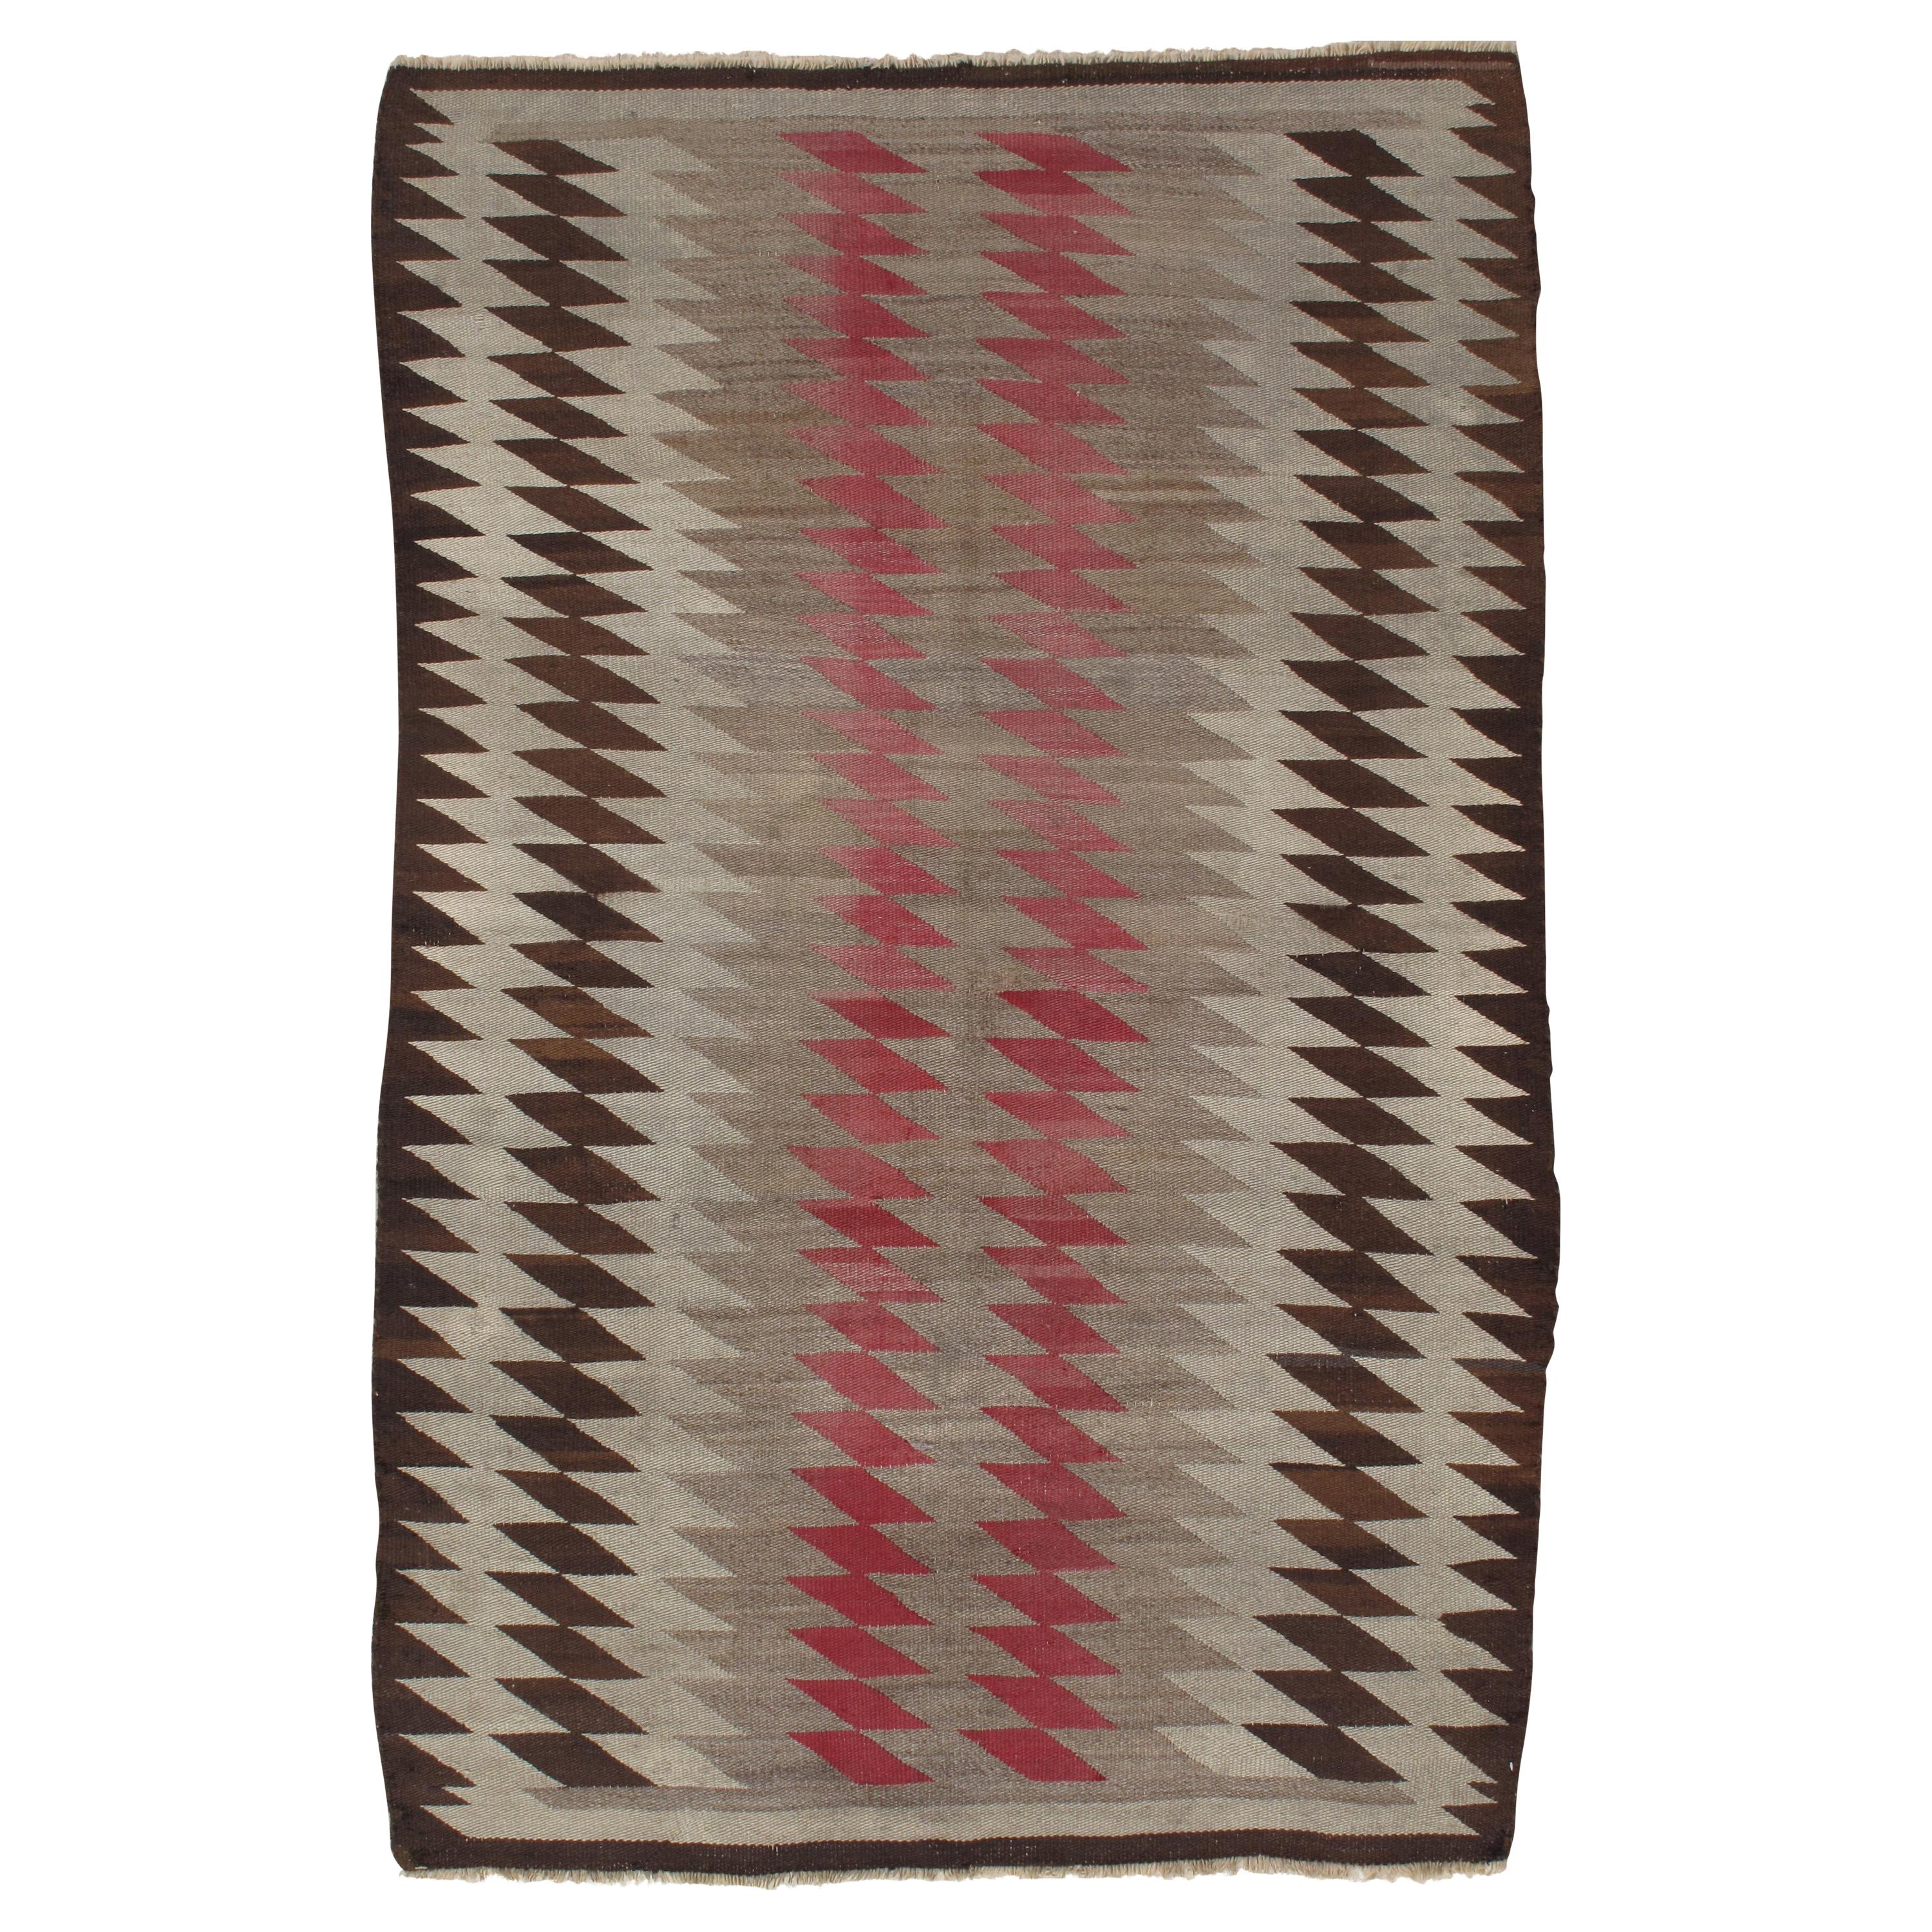 Antique Navajo Rug, Handmade Wool Oriental Rug, Taupe, Beige and Brown